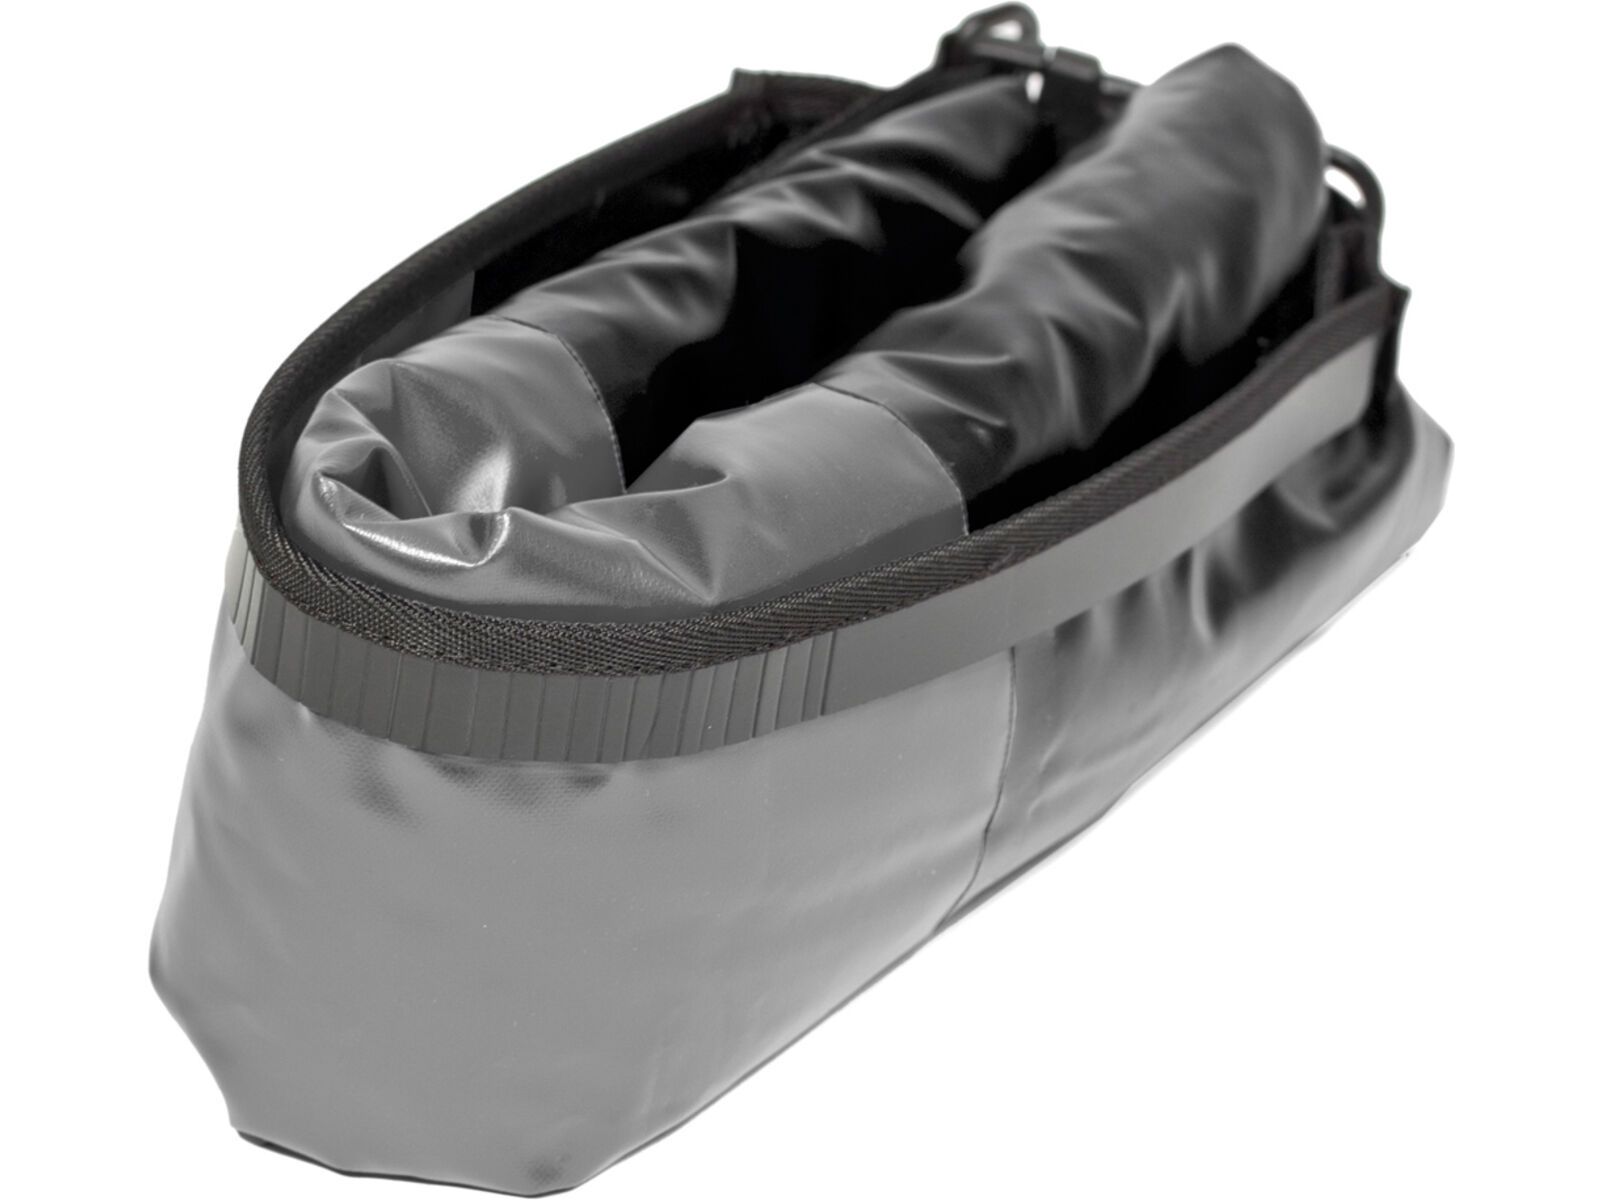 ORTLIEB Dry-Bag PD350 - 7 L, black-grey | Bild 4